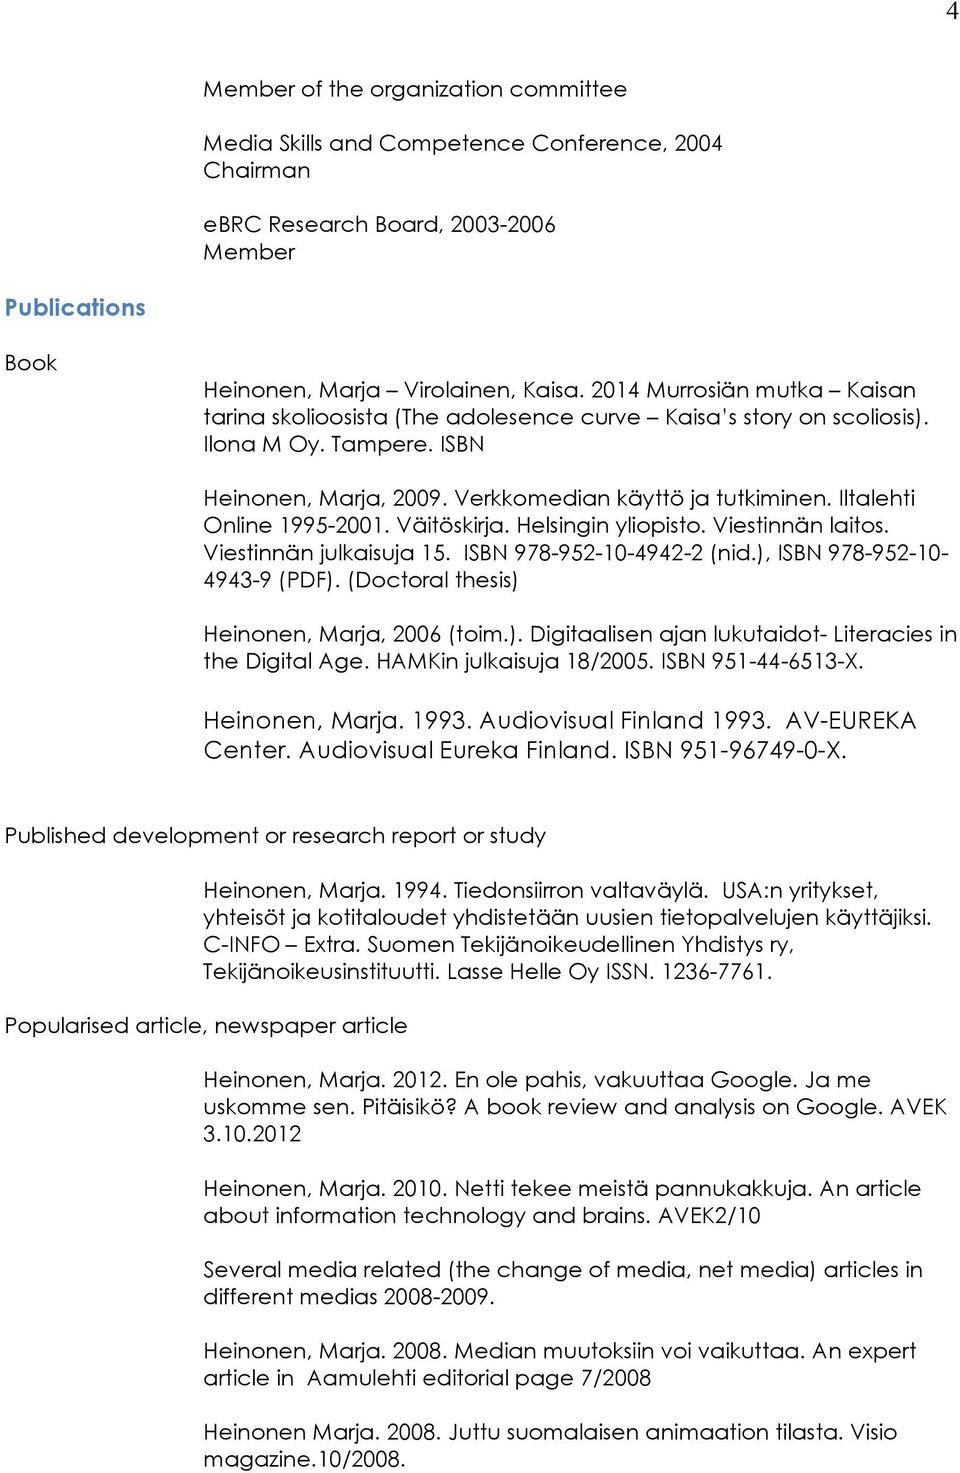 Iltalehti Online 1995-2001. Väitöskirja. Helsingin yliopisto. Viestinnän laitos. Viestinnän julkaisuja 15. ISBN 978-952-10-4942-2 (nid.), ISBN 978-952-10-4943-9 (PDF).